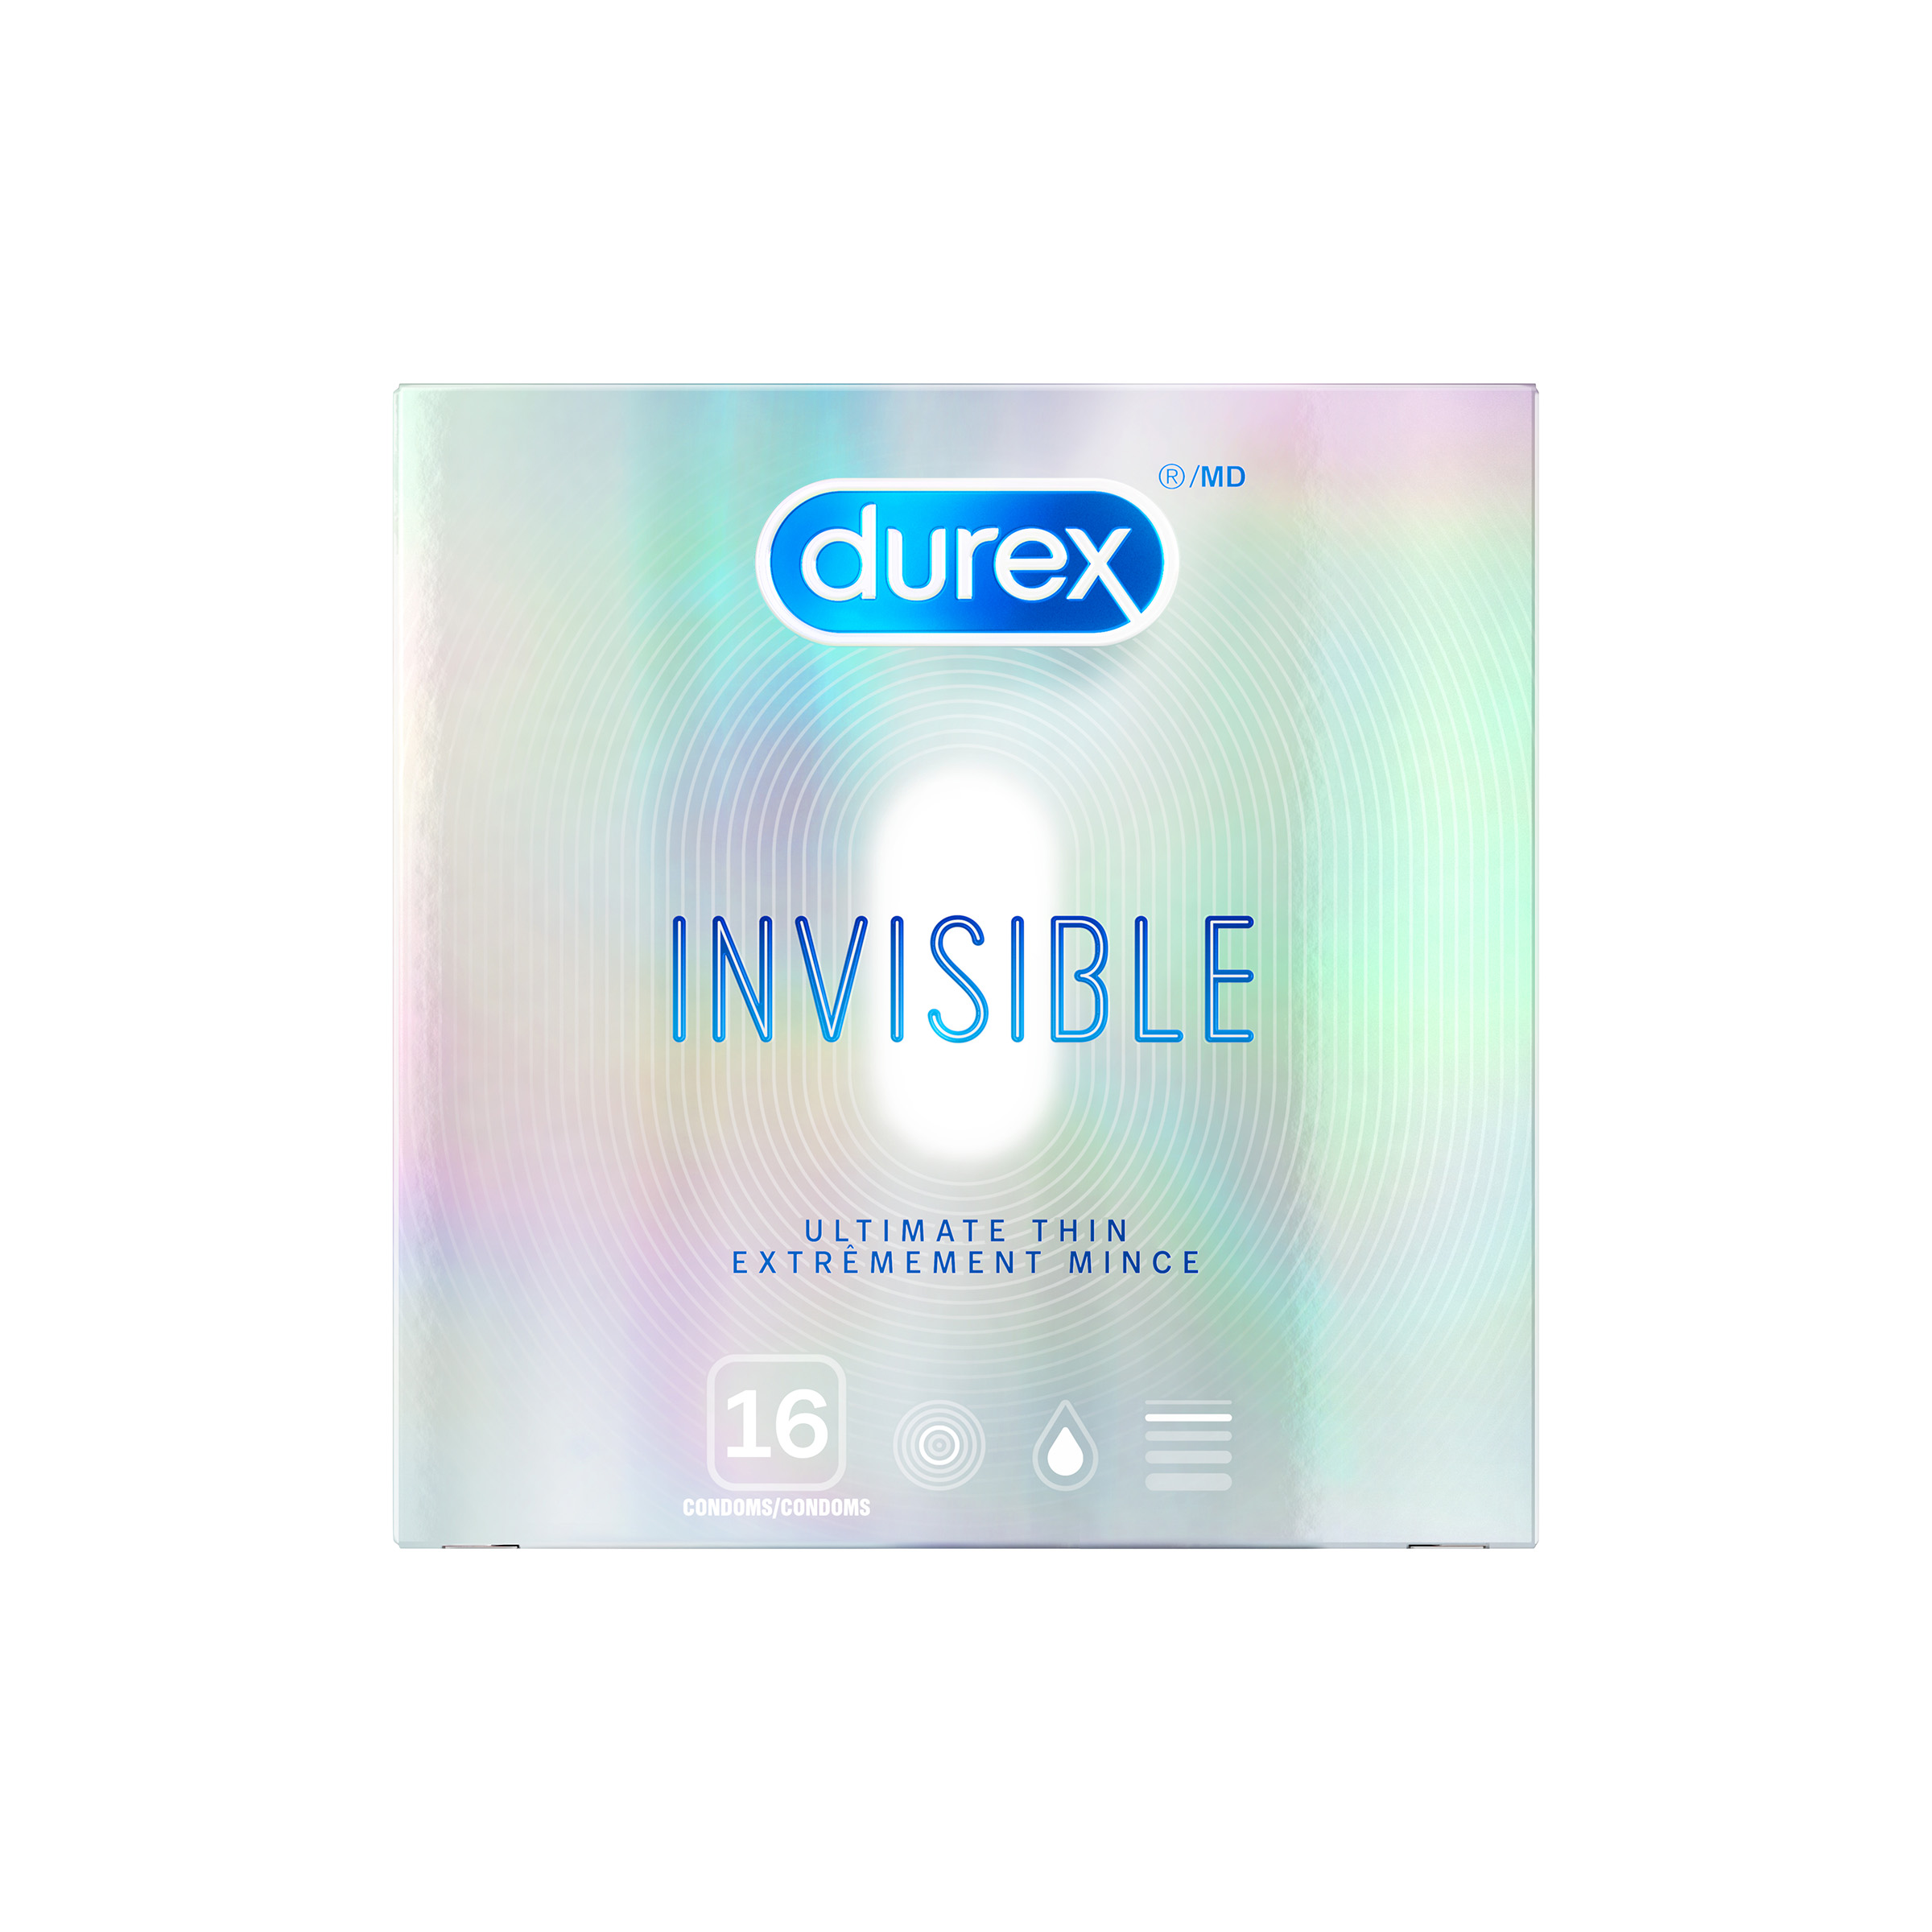 DUREX Invisible Ultimate Thin Condoms Canada